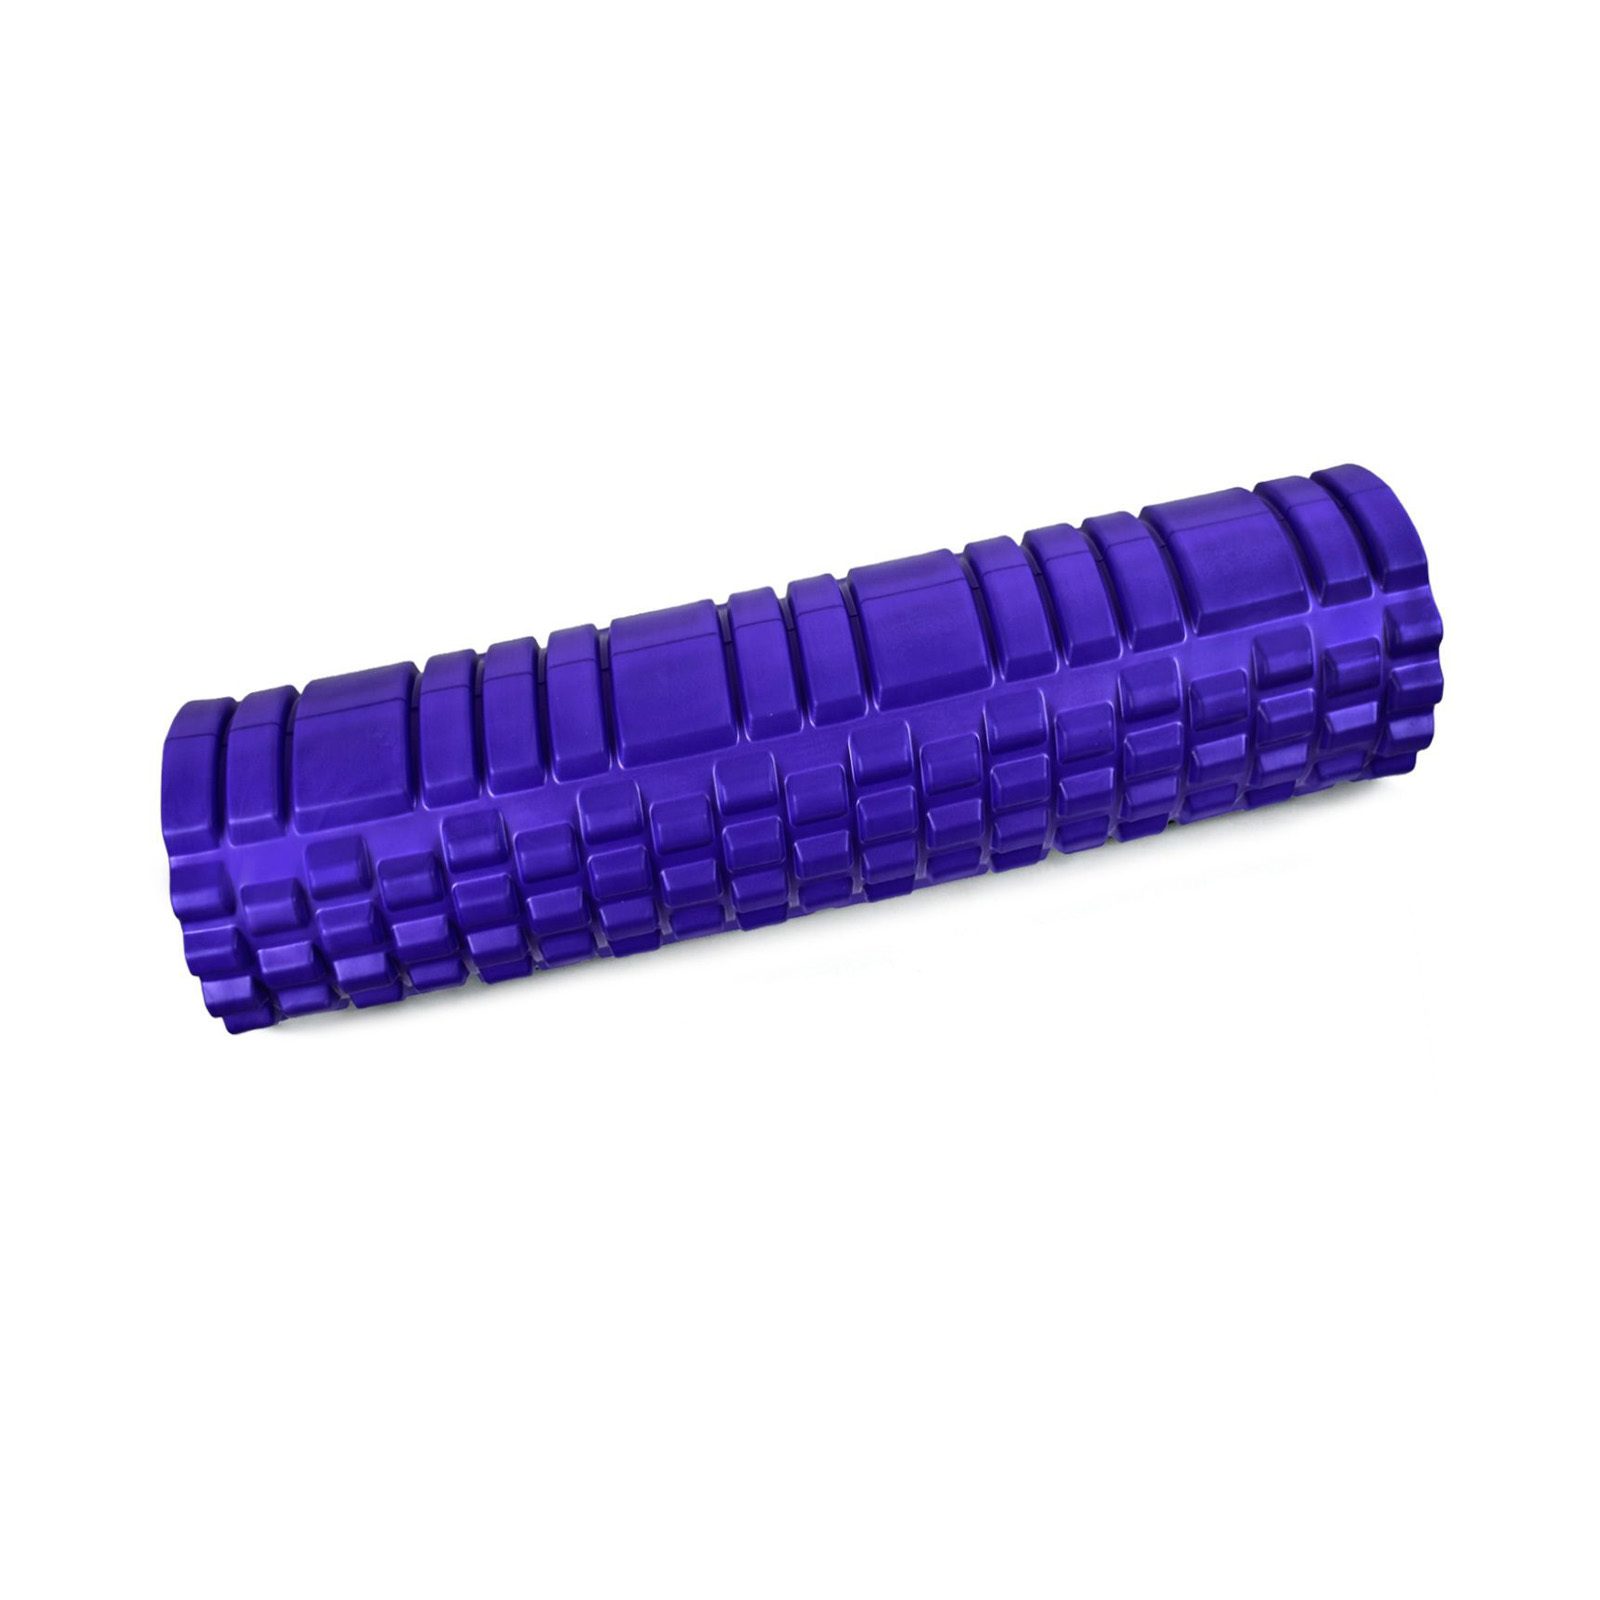 Ролик массажный для йоги CLIFF 61*14см, фиолетовый